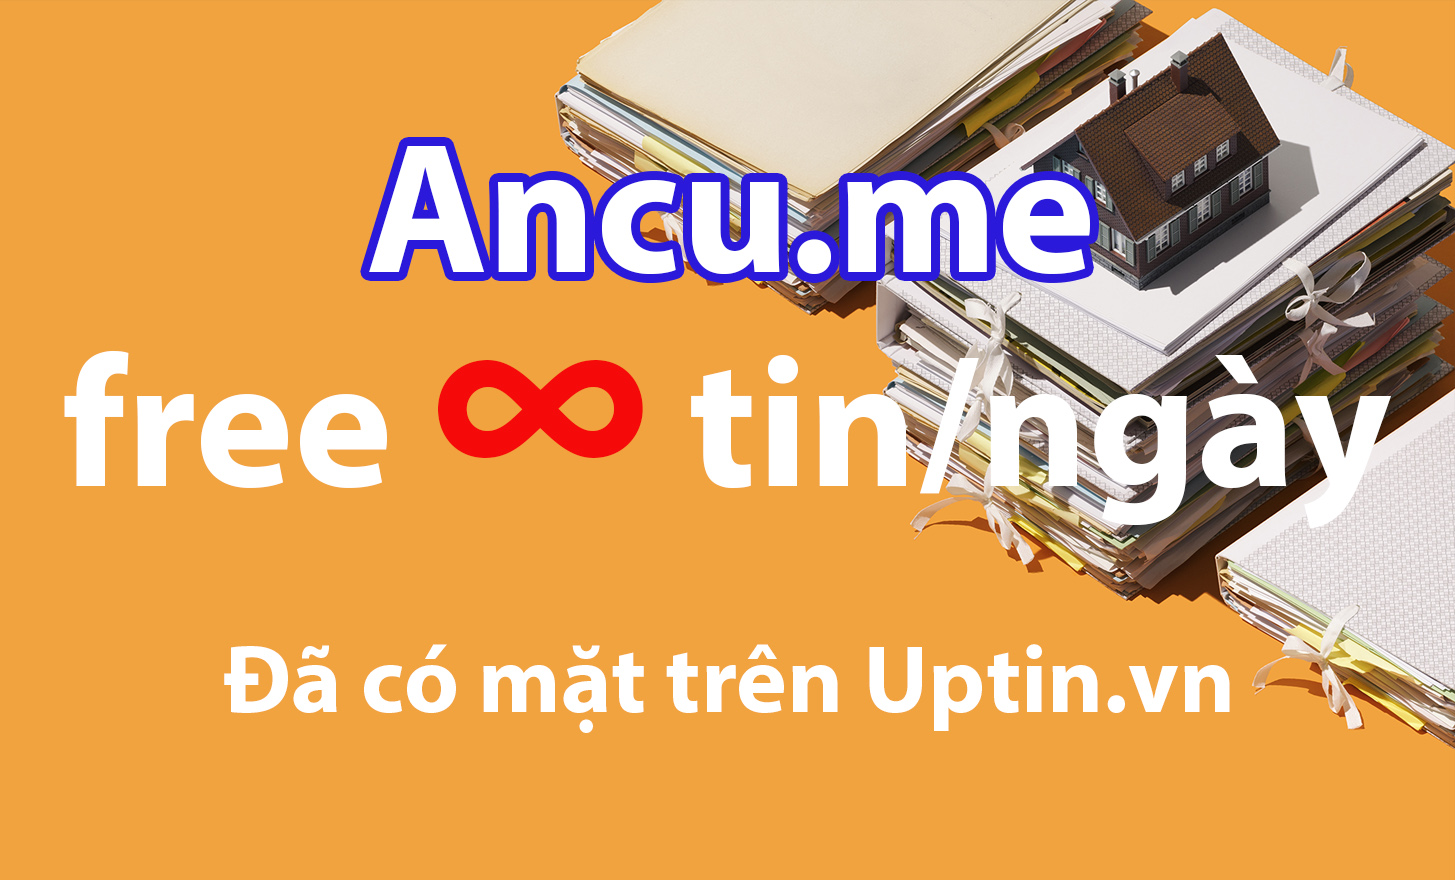 Liên kết thành công Ancu.me ✅ vào Uptin.vn